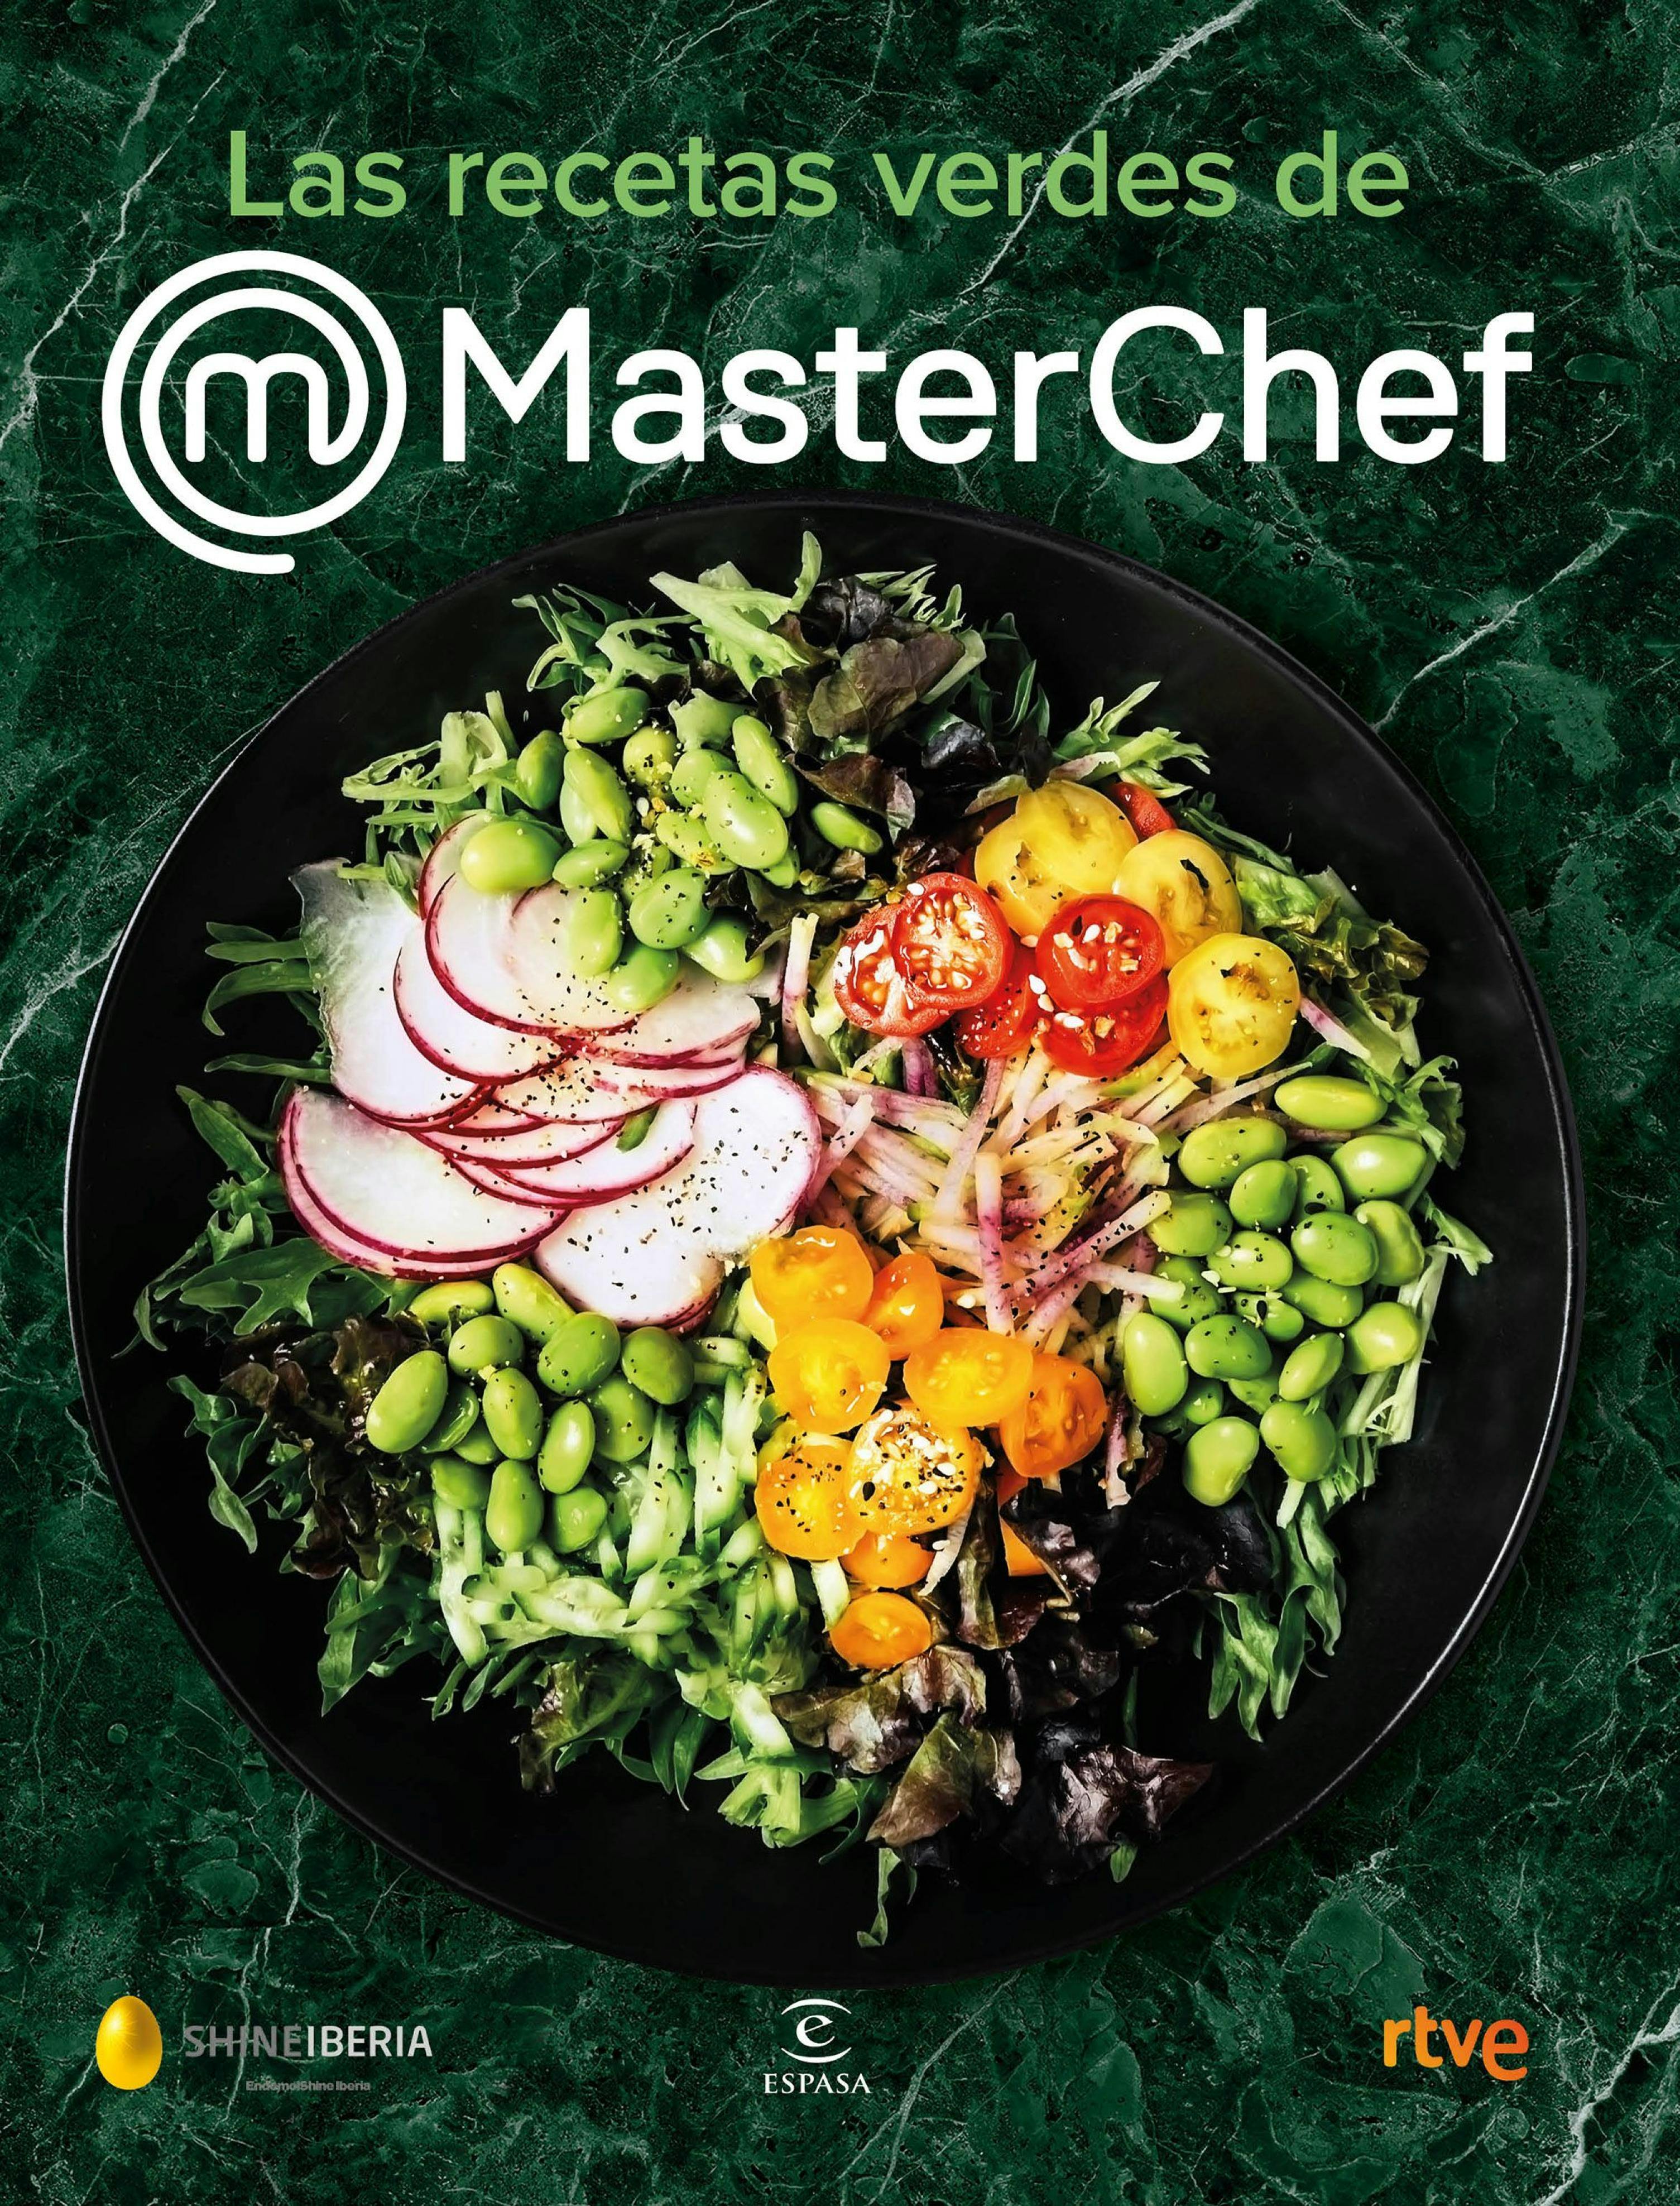 Las recetas verdes de MasterChef - Shine, CR TVE